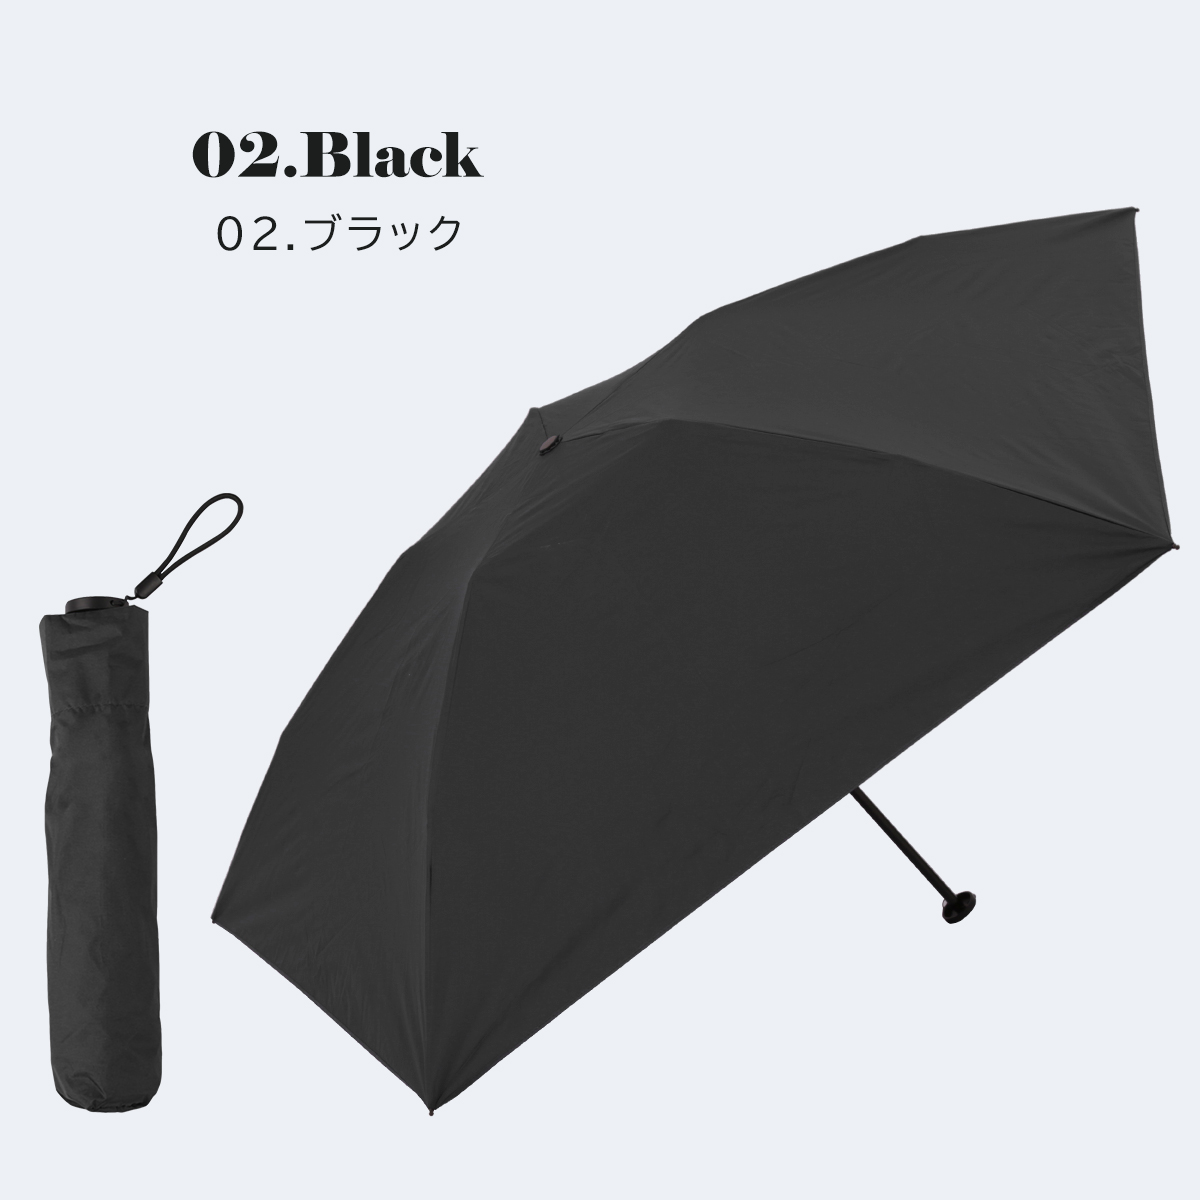 日傘 超軽量カーボン傘 108g 晴雨兼用 超撥水 完全遮光 ポキポキタイプ 折りたたみ 大きい 9...